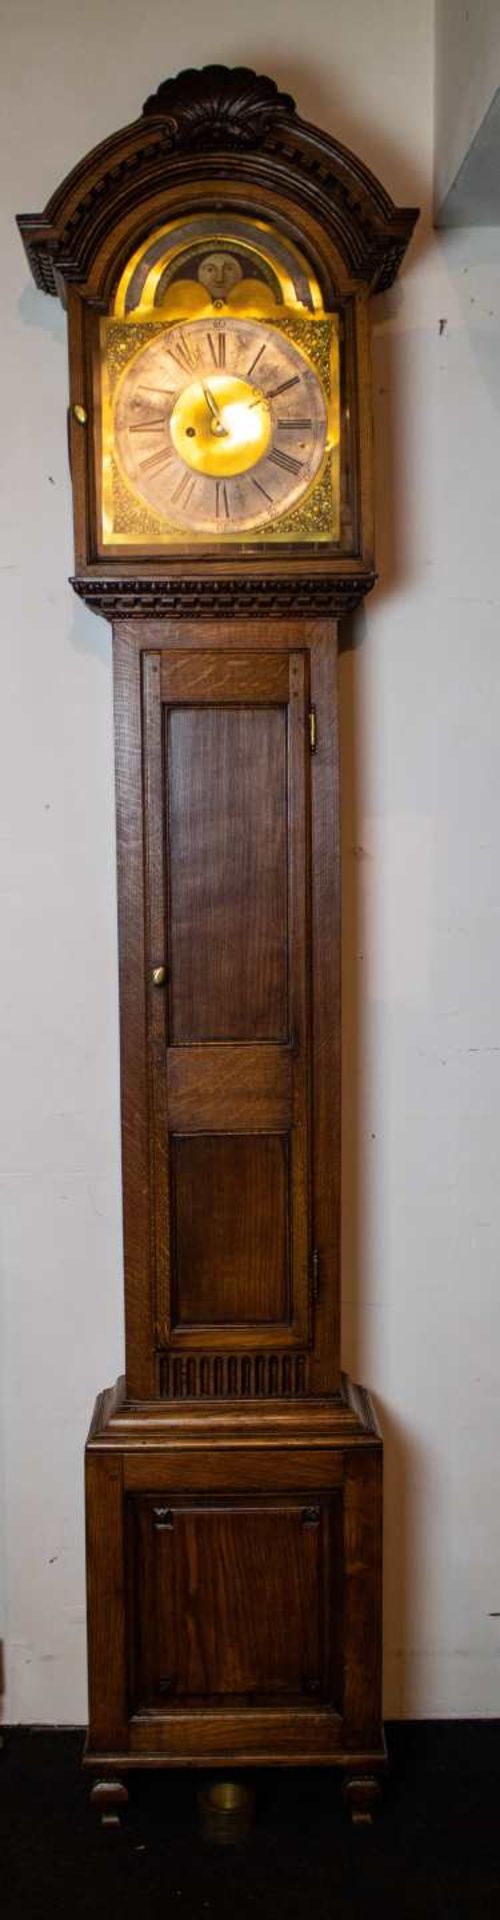 Longcase clock in oak case